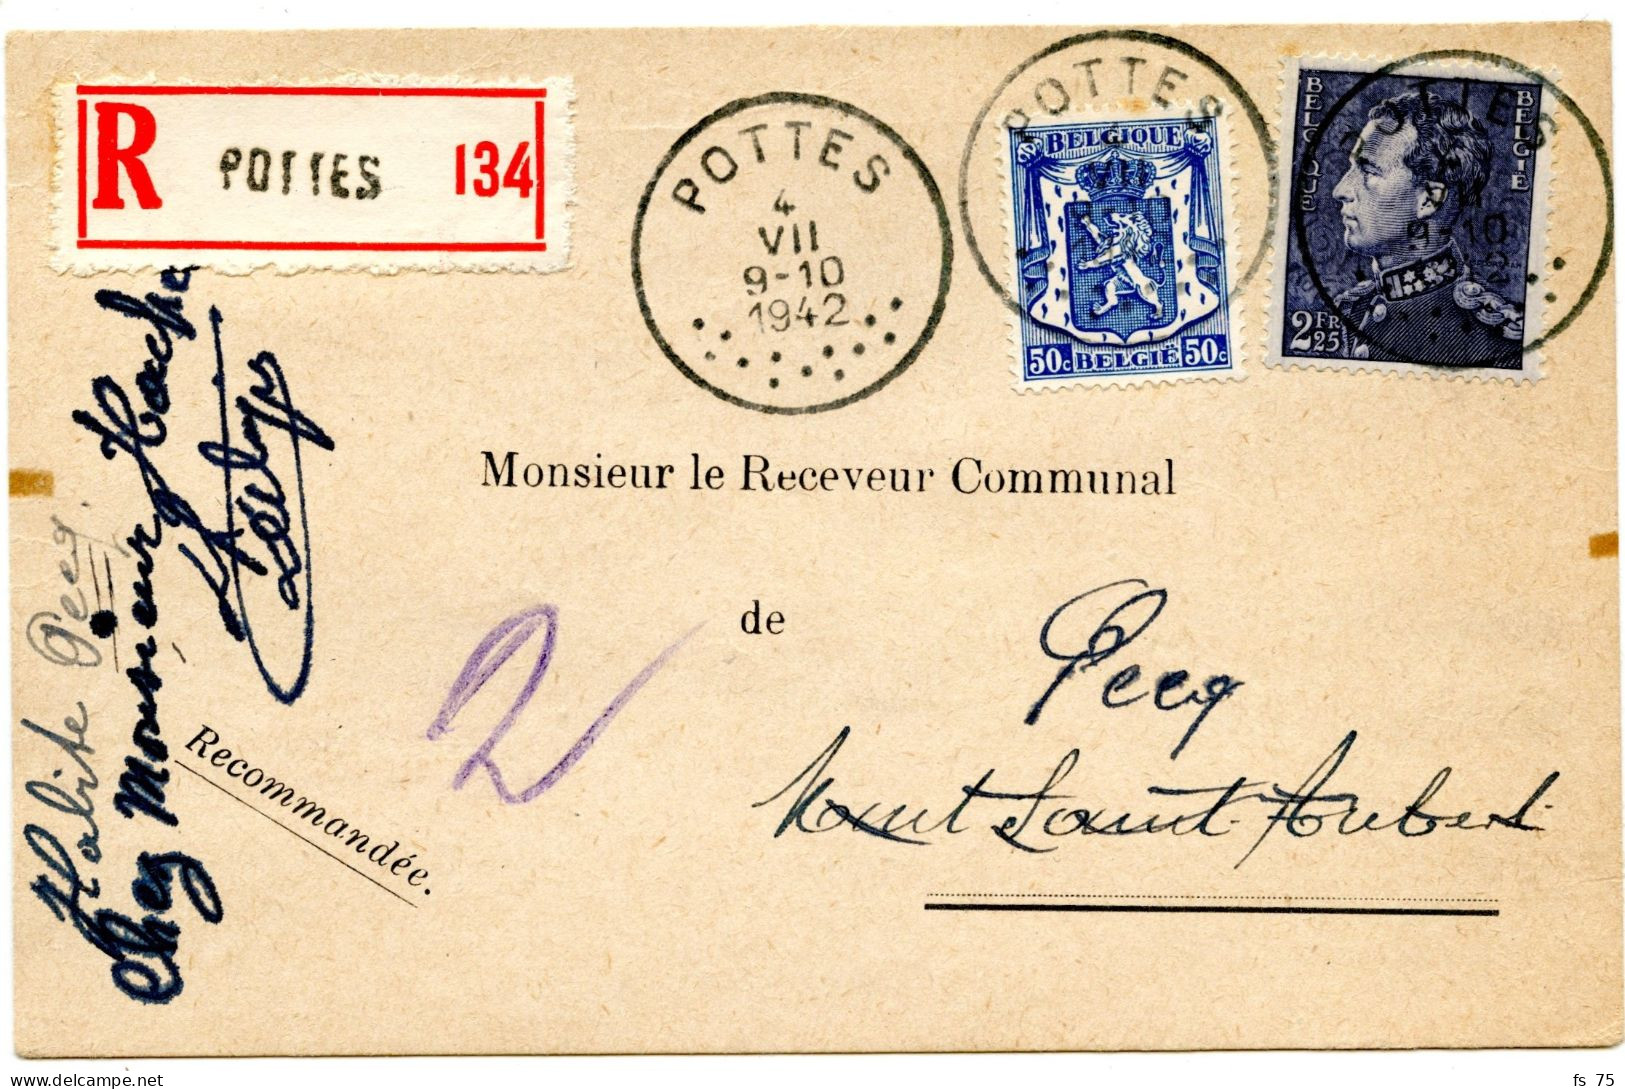 BELGIQUE - COB 426+529  SIMPLE CERCLE POTTES SUR CARTE POSTALE COMMERCIALE RECOMMANDEE, 1942 - Lettres & Documents